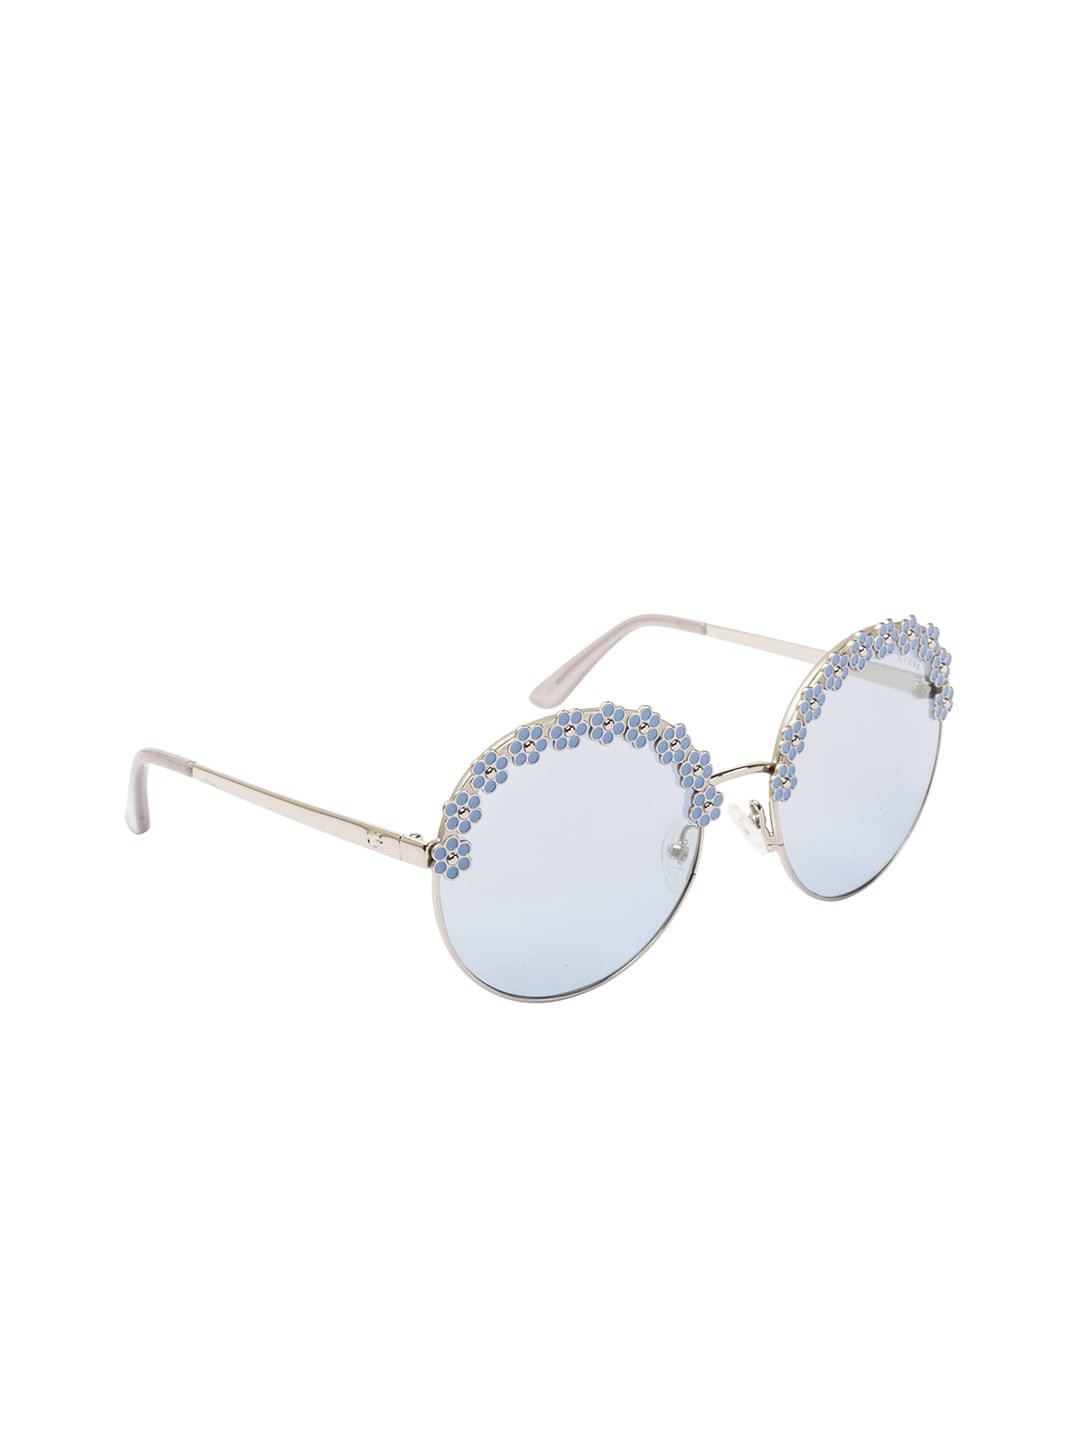 GUESS Women Round Sunglasses GU7587 59 10X Price in India